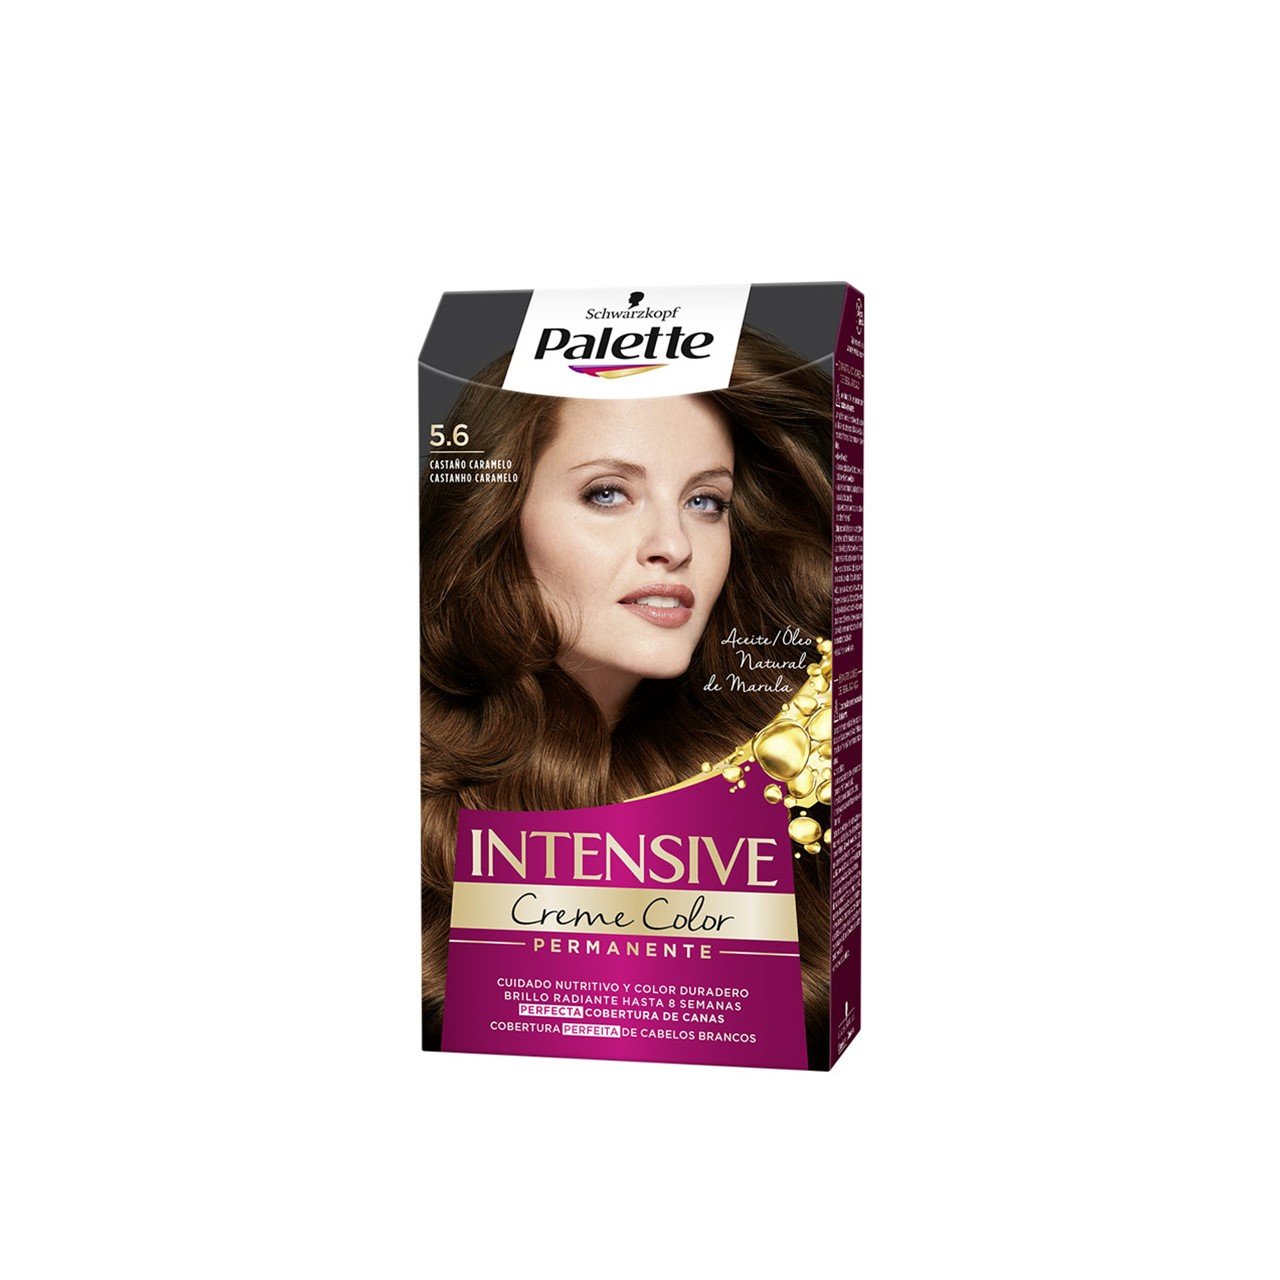 Schwarzkopf Palette Intensive Creme Color Permanent Hair Dye 5.6 Caramel Brown